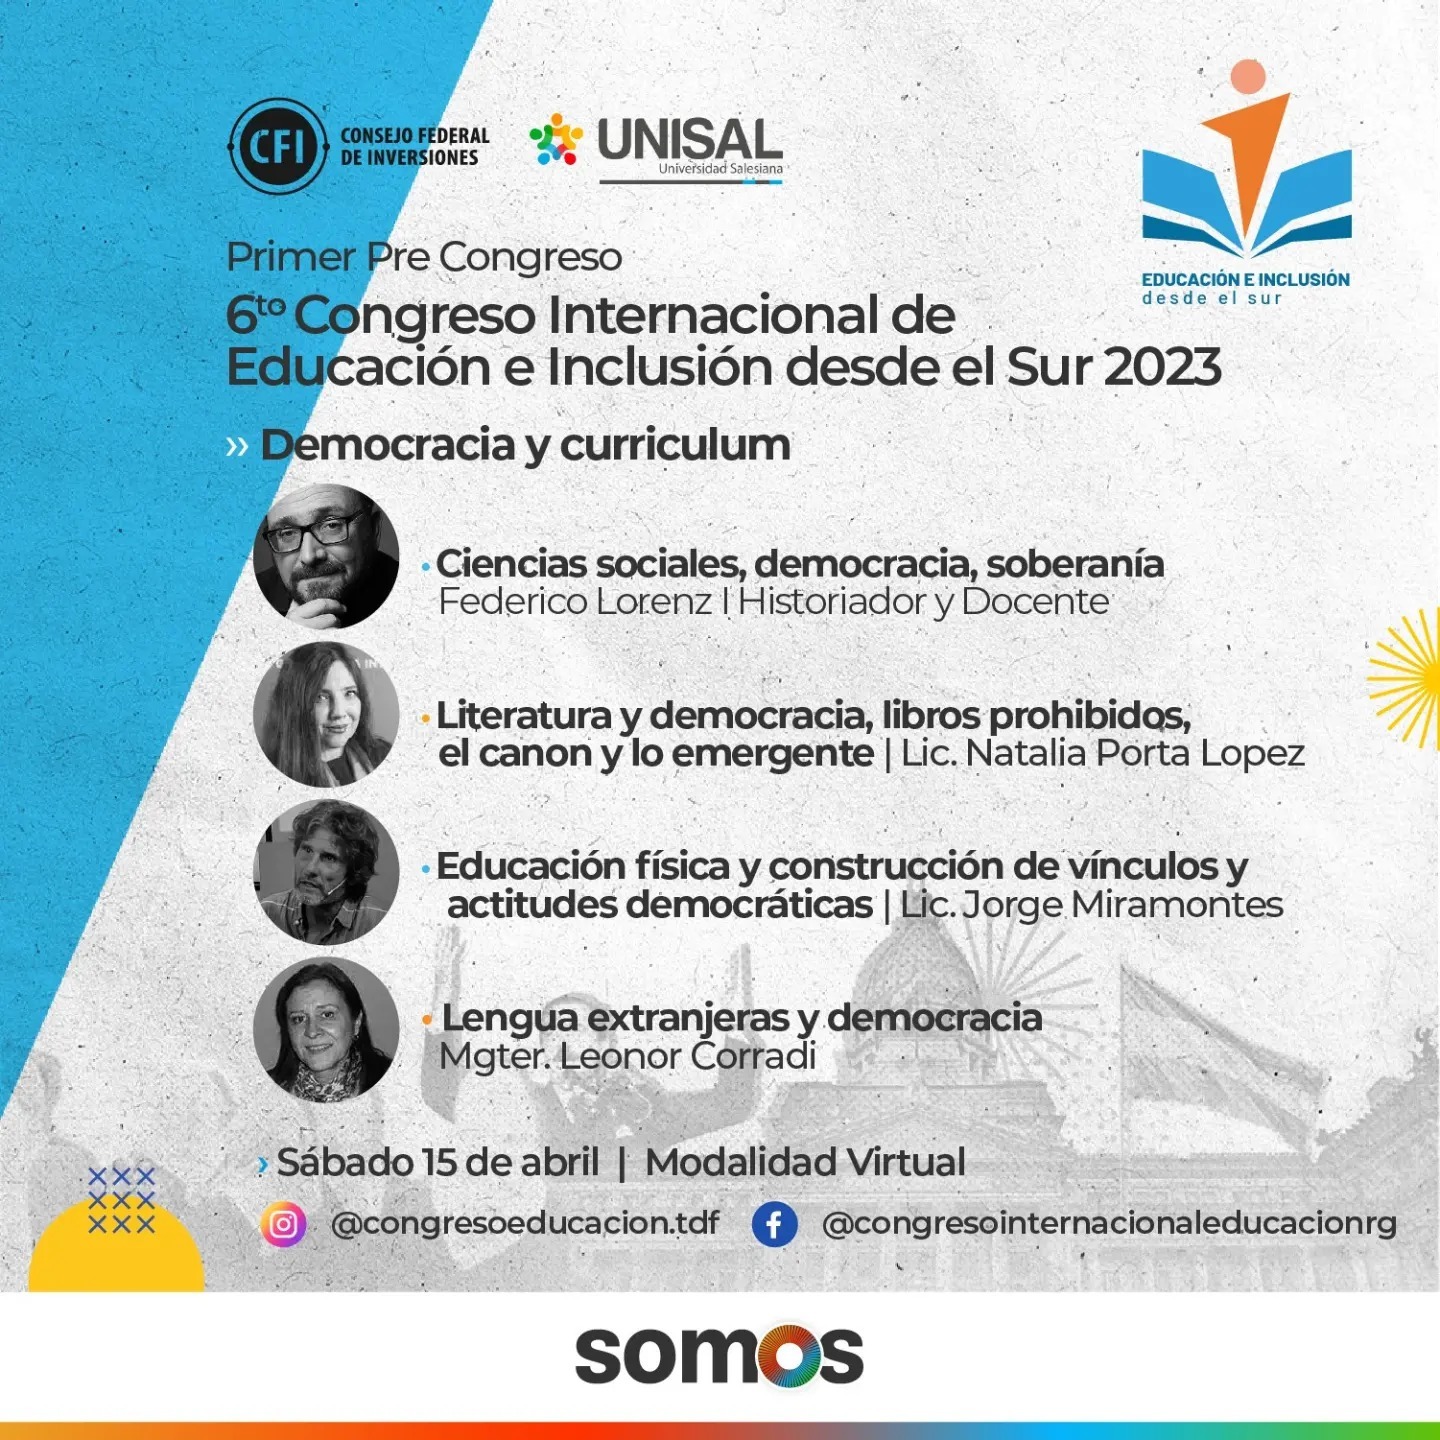 6to Congreso Internacional de Educación e Inclusión desde el Sur 2023 “40 años - hacer nuestra Democracia más democrática”